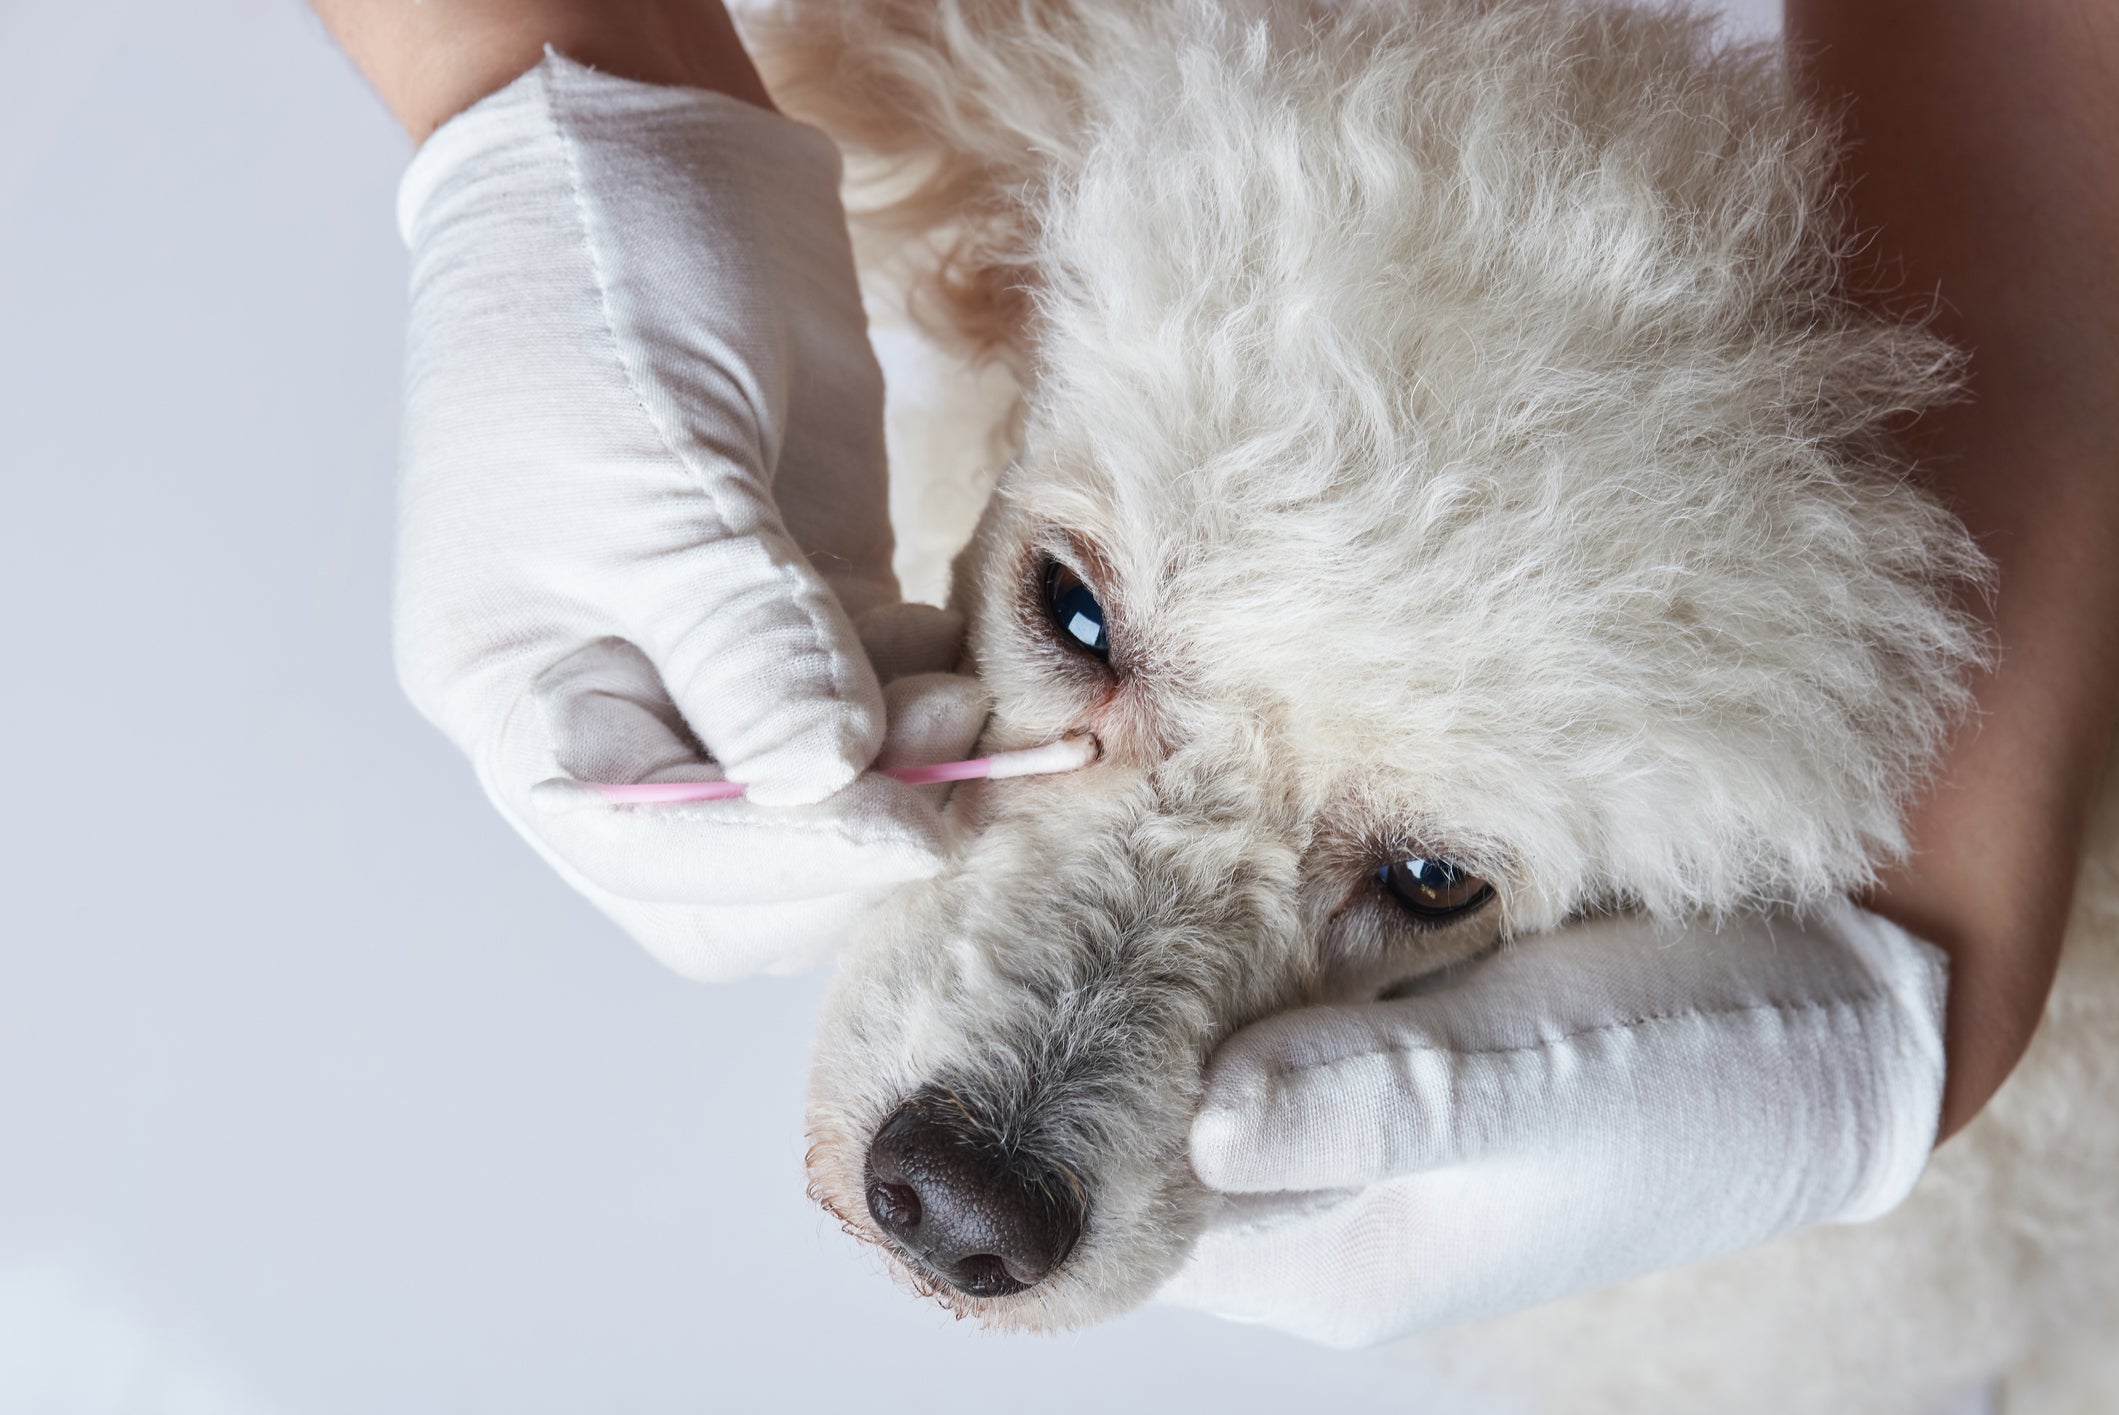 Mãos com luvas brancas limpando olhos de cão branco utilizando cotonete